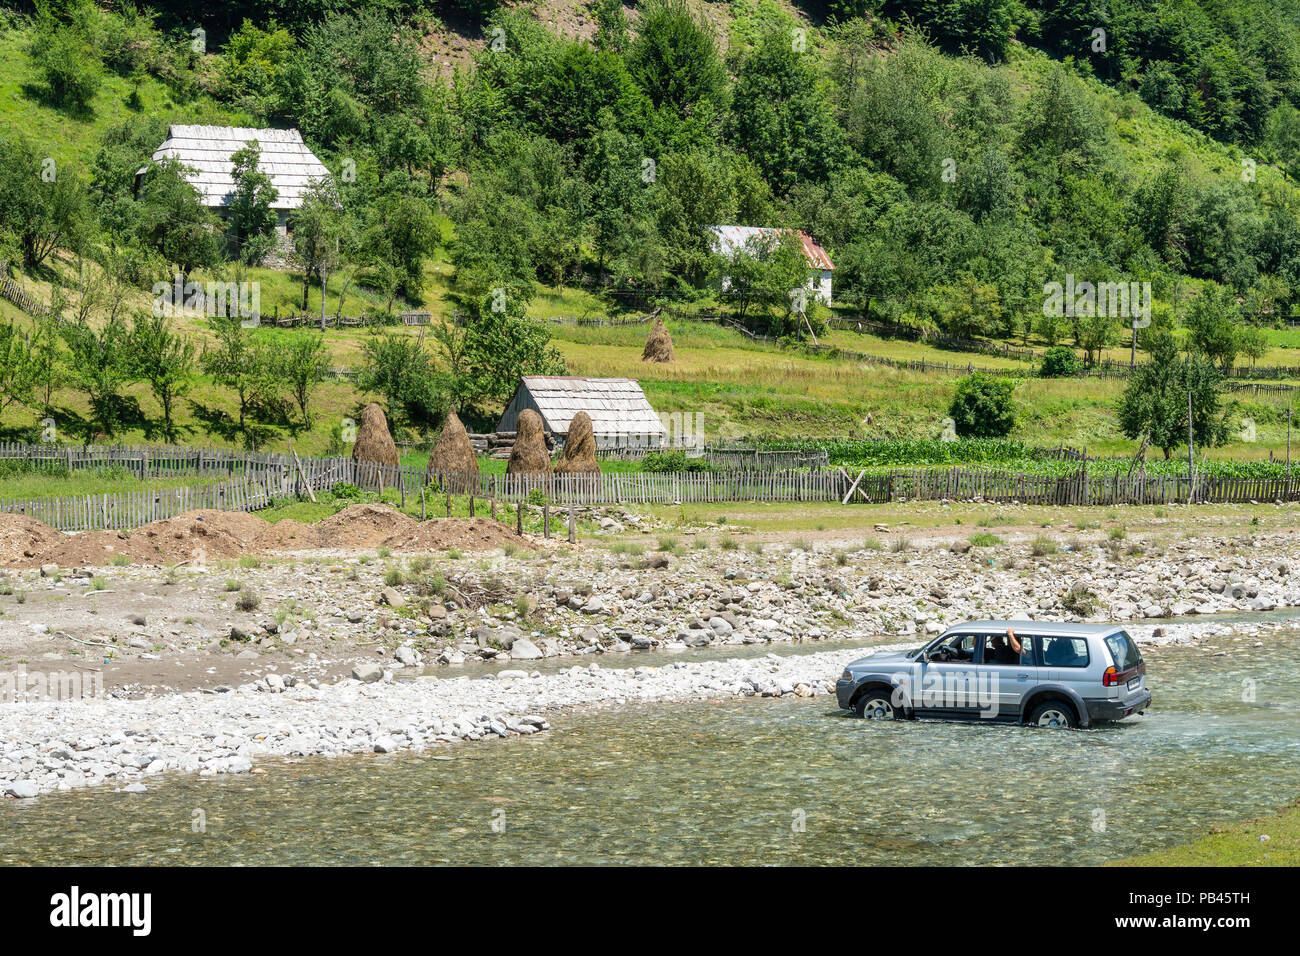 Ein Auto in der Furt des Flusses Grencars Vermosh, der nördlichste Dorf in Albanien, knapp unterhalb der Grenze mit Montinegro. Albanien. Stockfoto